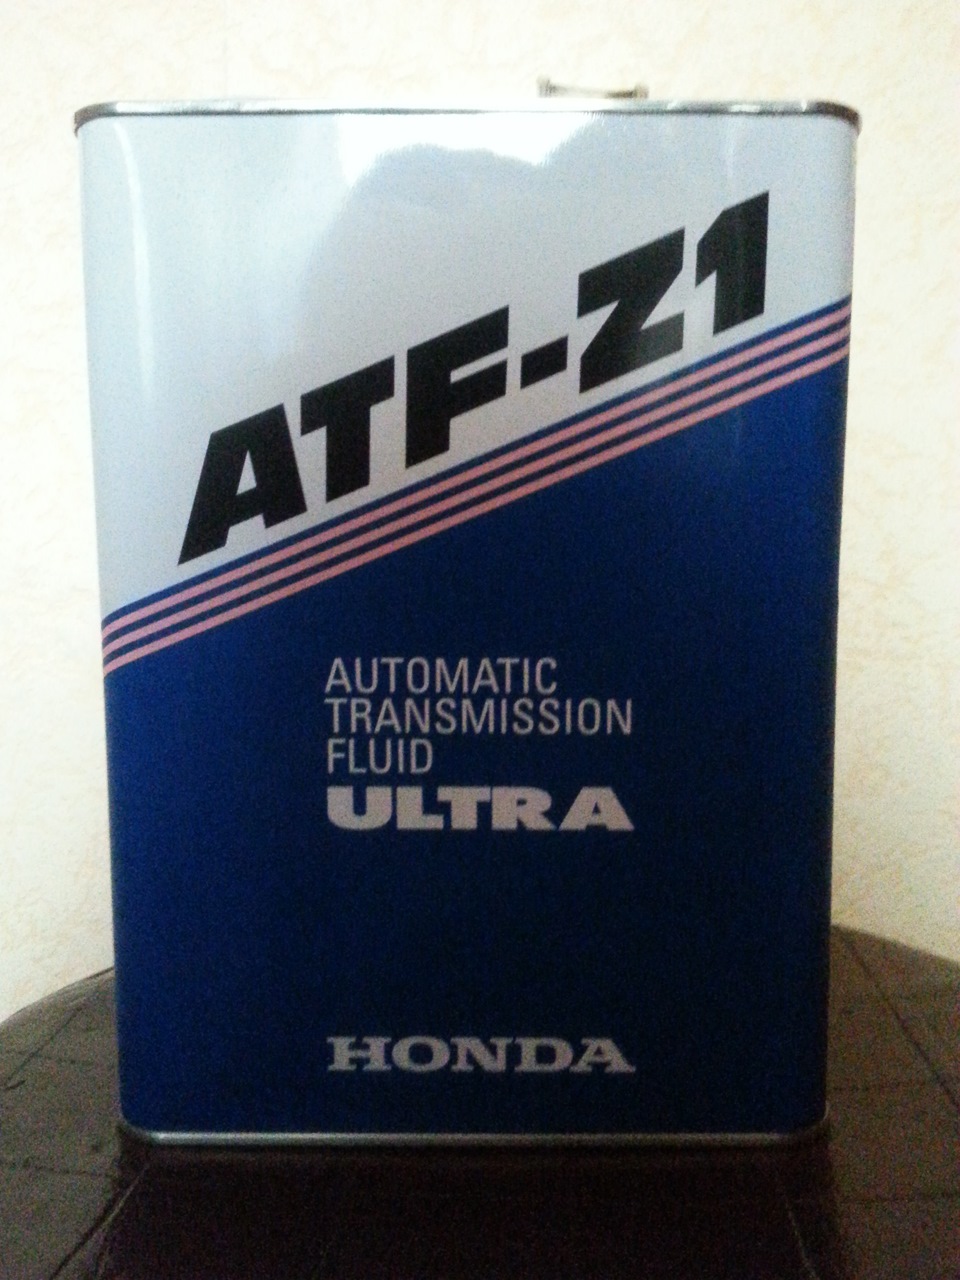 Atf z 1. Honda ATF Z-1. ATF z1 Honda артикул. Honda ATF z1 1л артикул. Honda Ultra ATF-z1 1l.